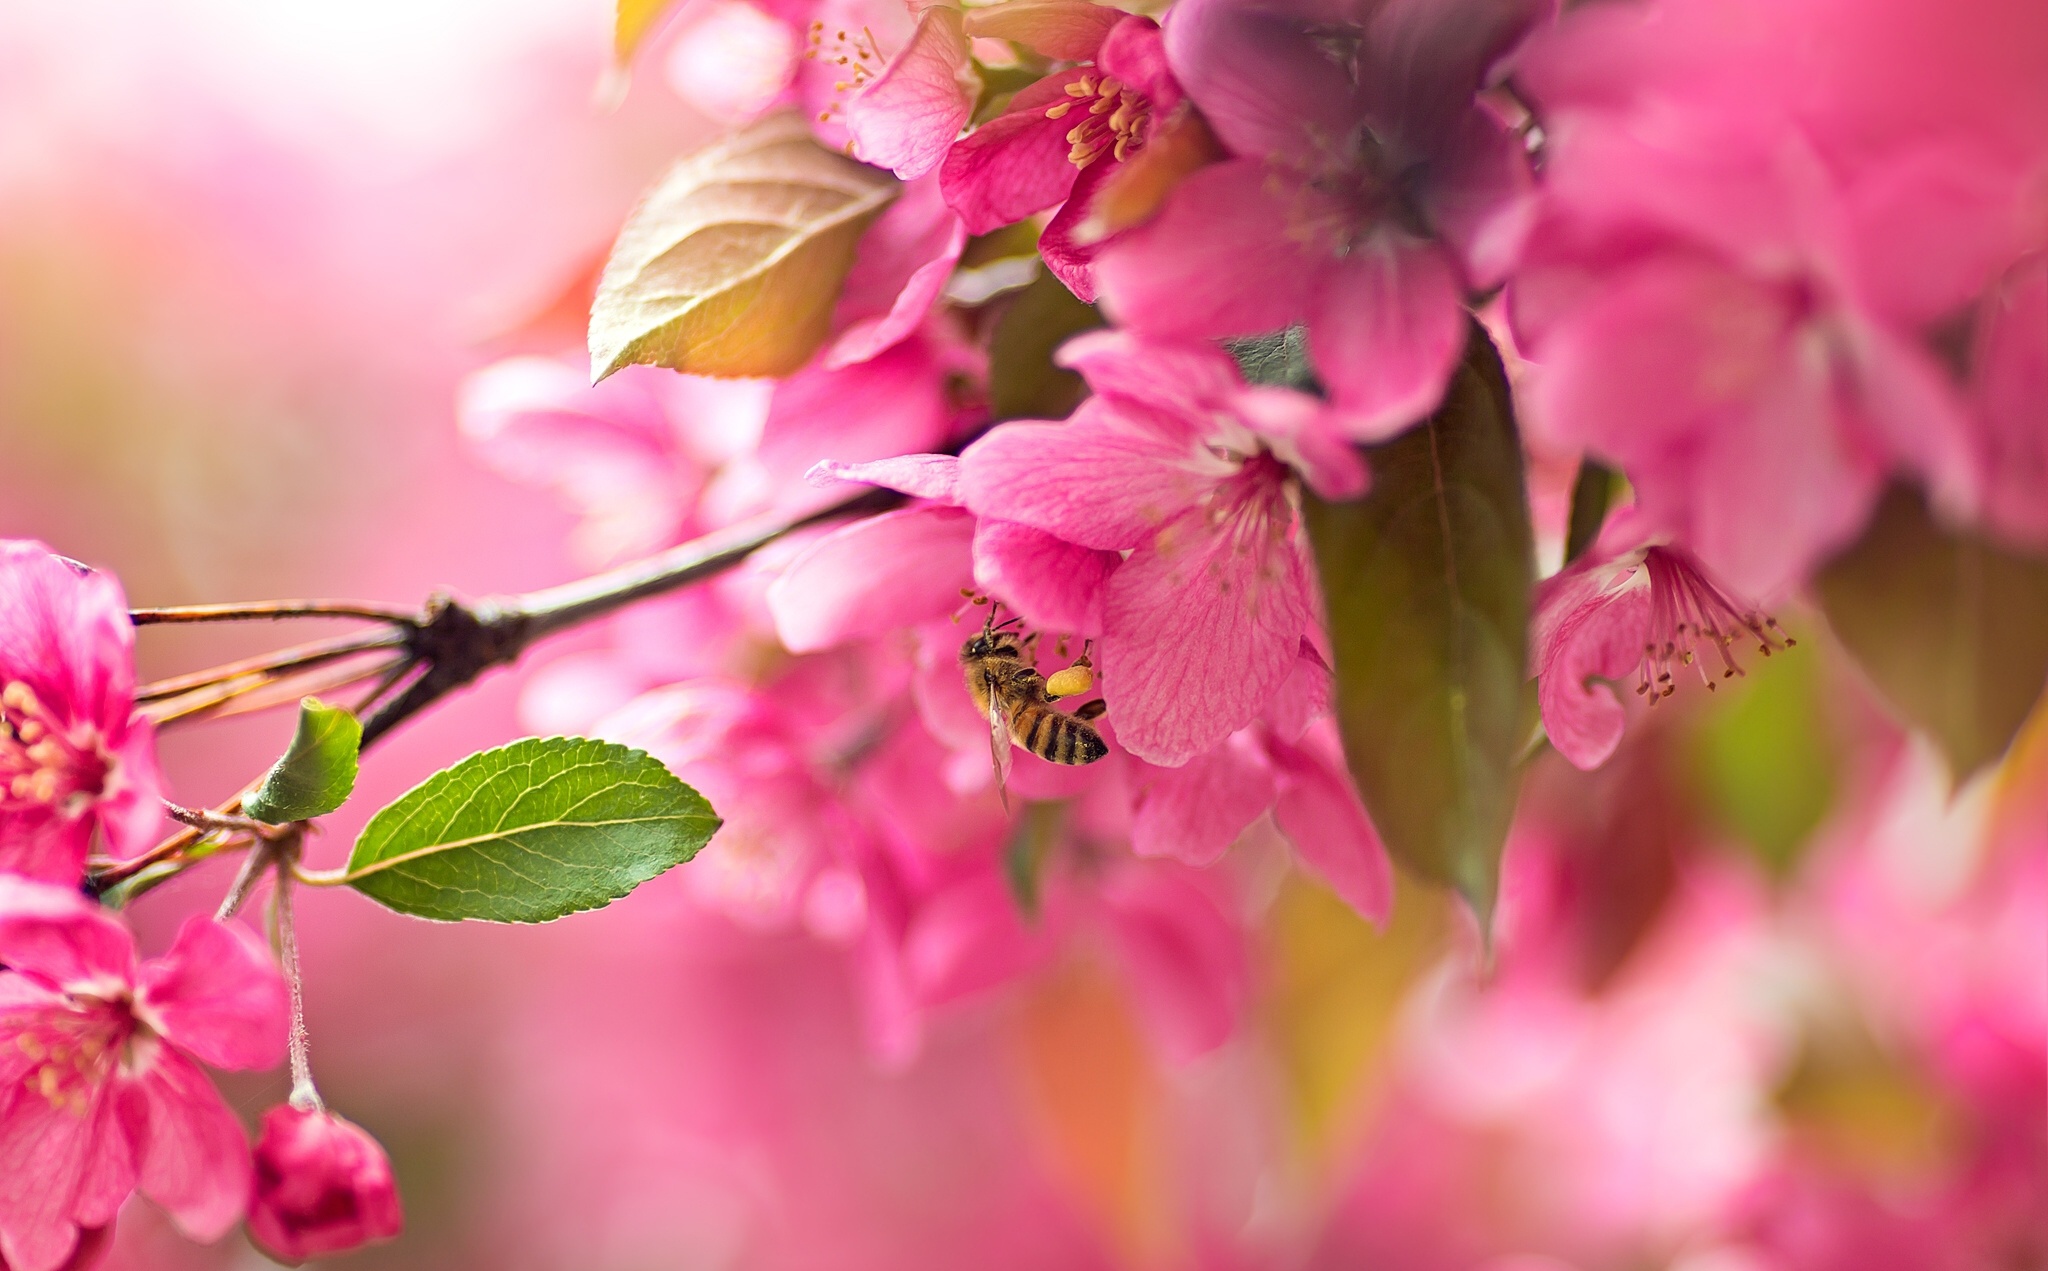 Descarga gratuita de fondo de pantalla para móvil de Naturaleza, Flores, Flor, Flor Rosa, Florecer, Insecto, Abeja, Primavera, Tierra/naturaleza, Macrofotografía.